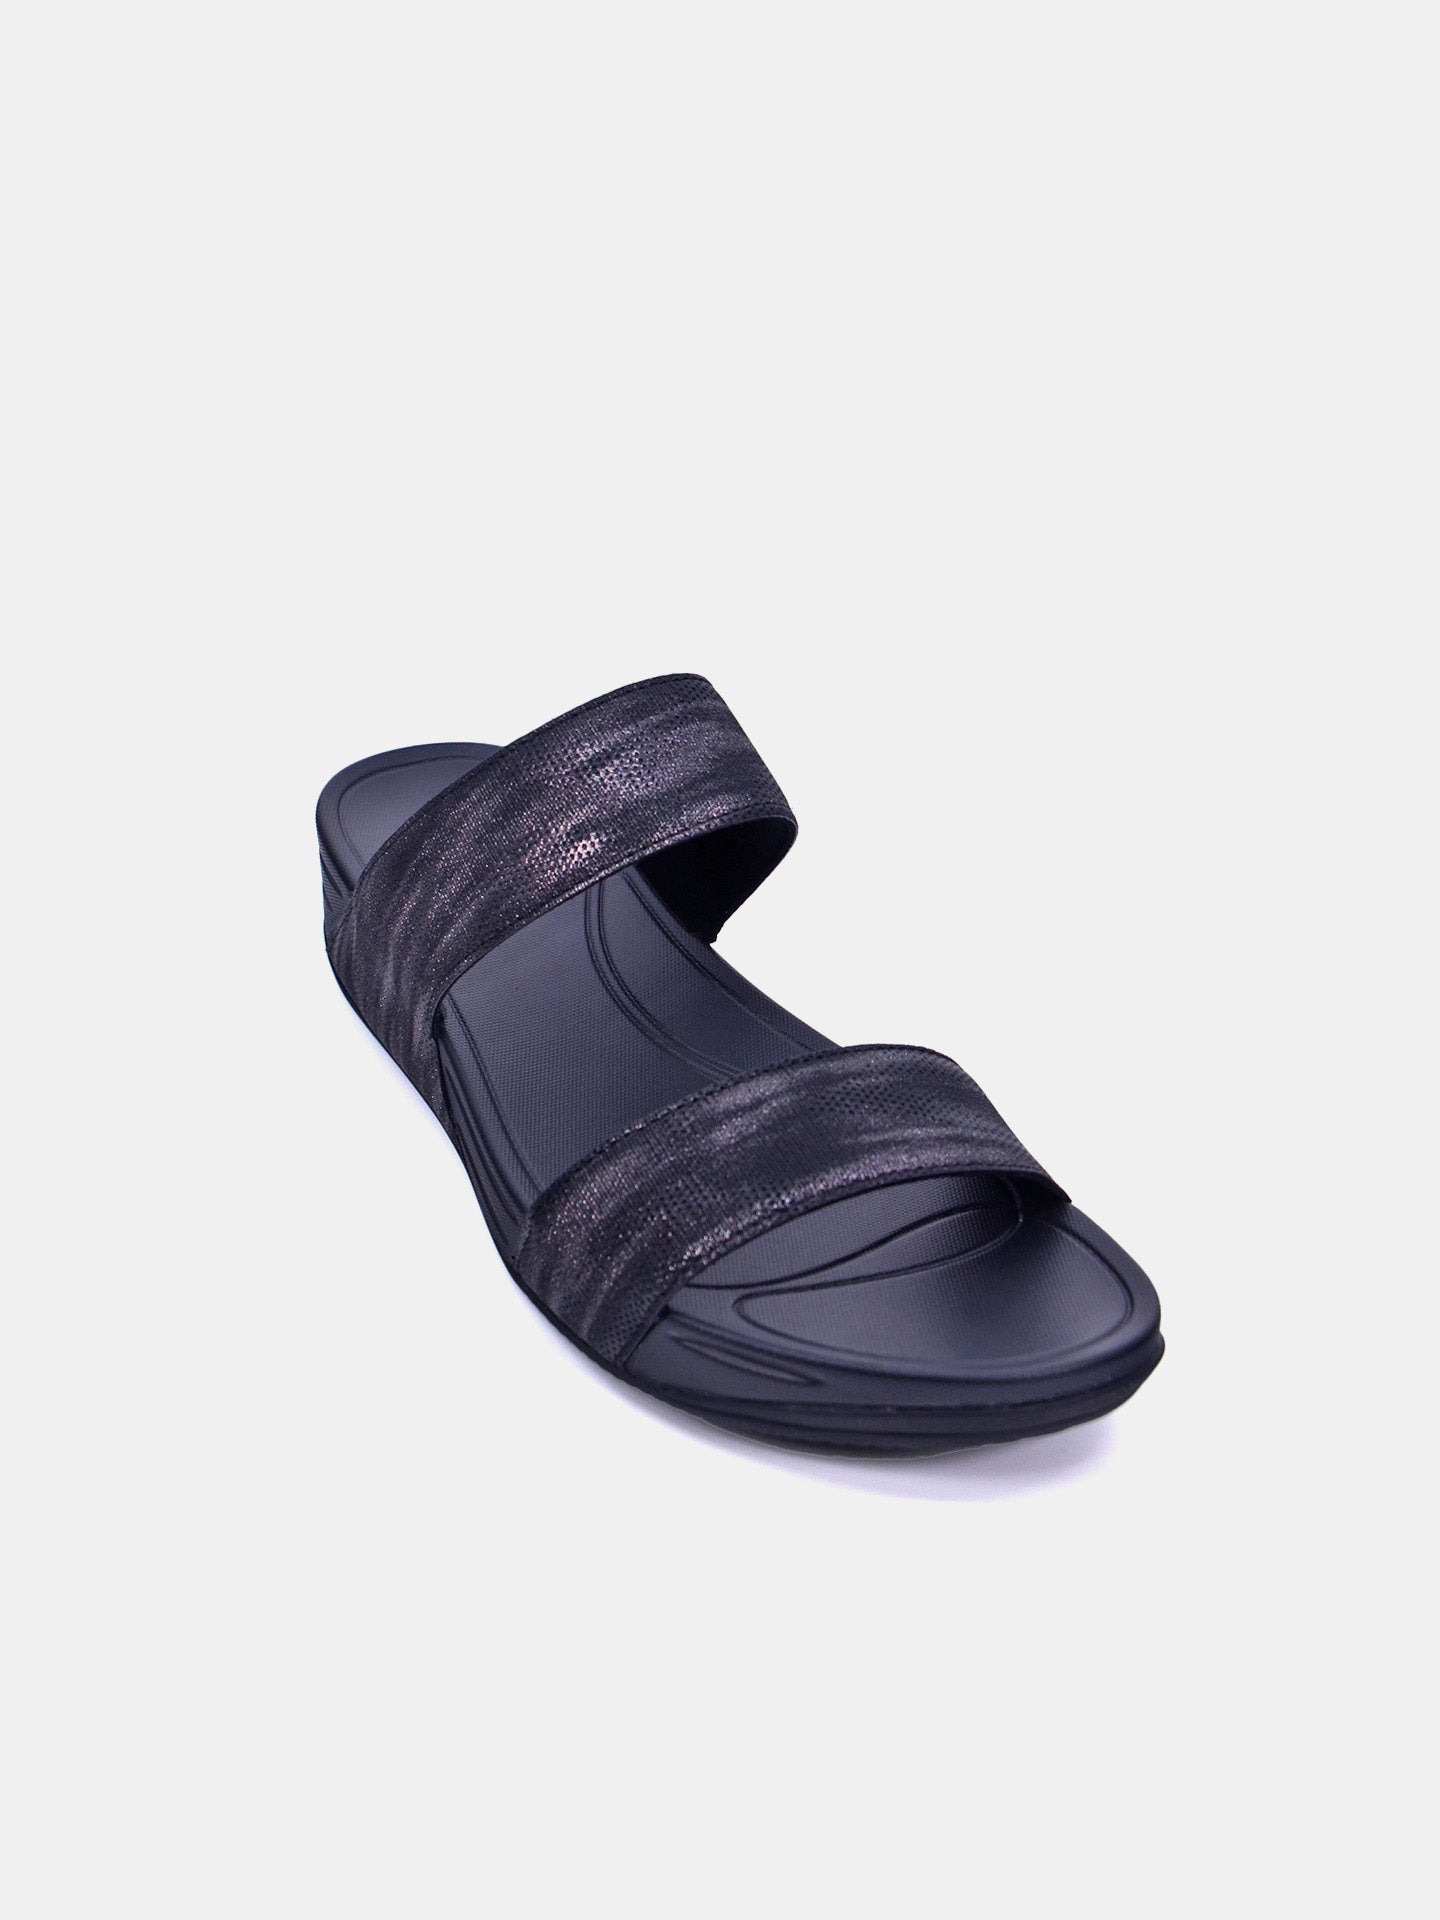 Michelle Morgan 214RJ911 Women's Sandals #color_Black